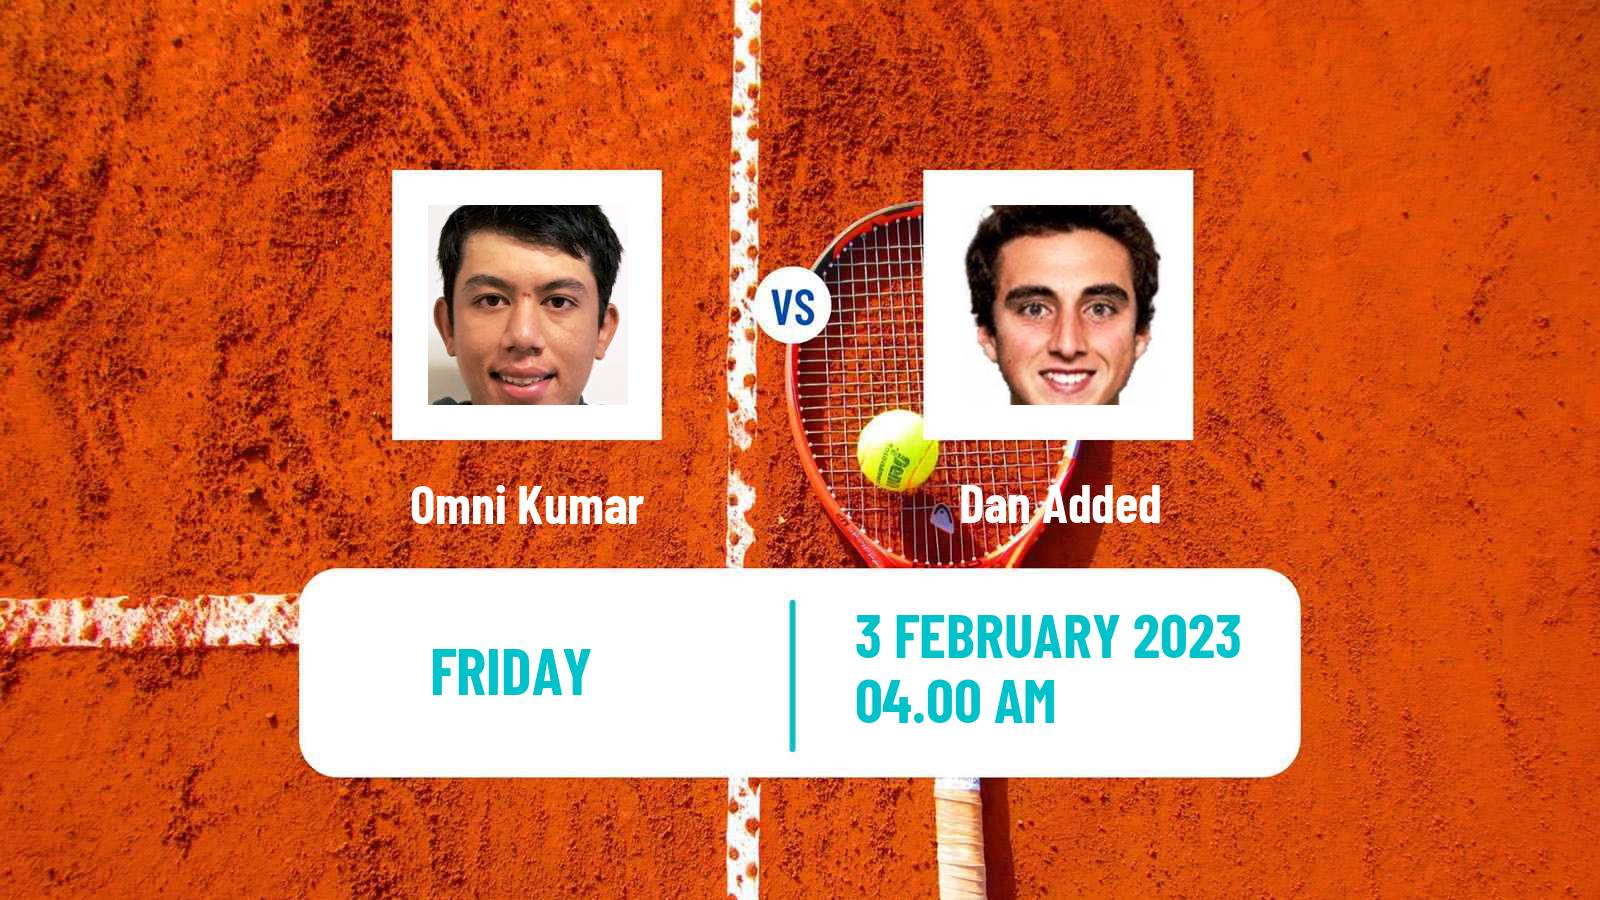 Tennis ITF Tournaments Omni Kumar - Dan Added